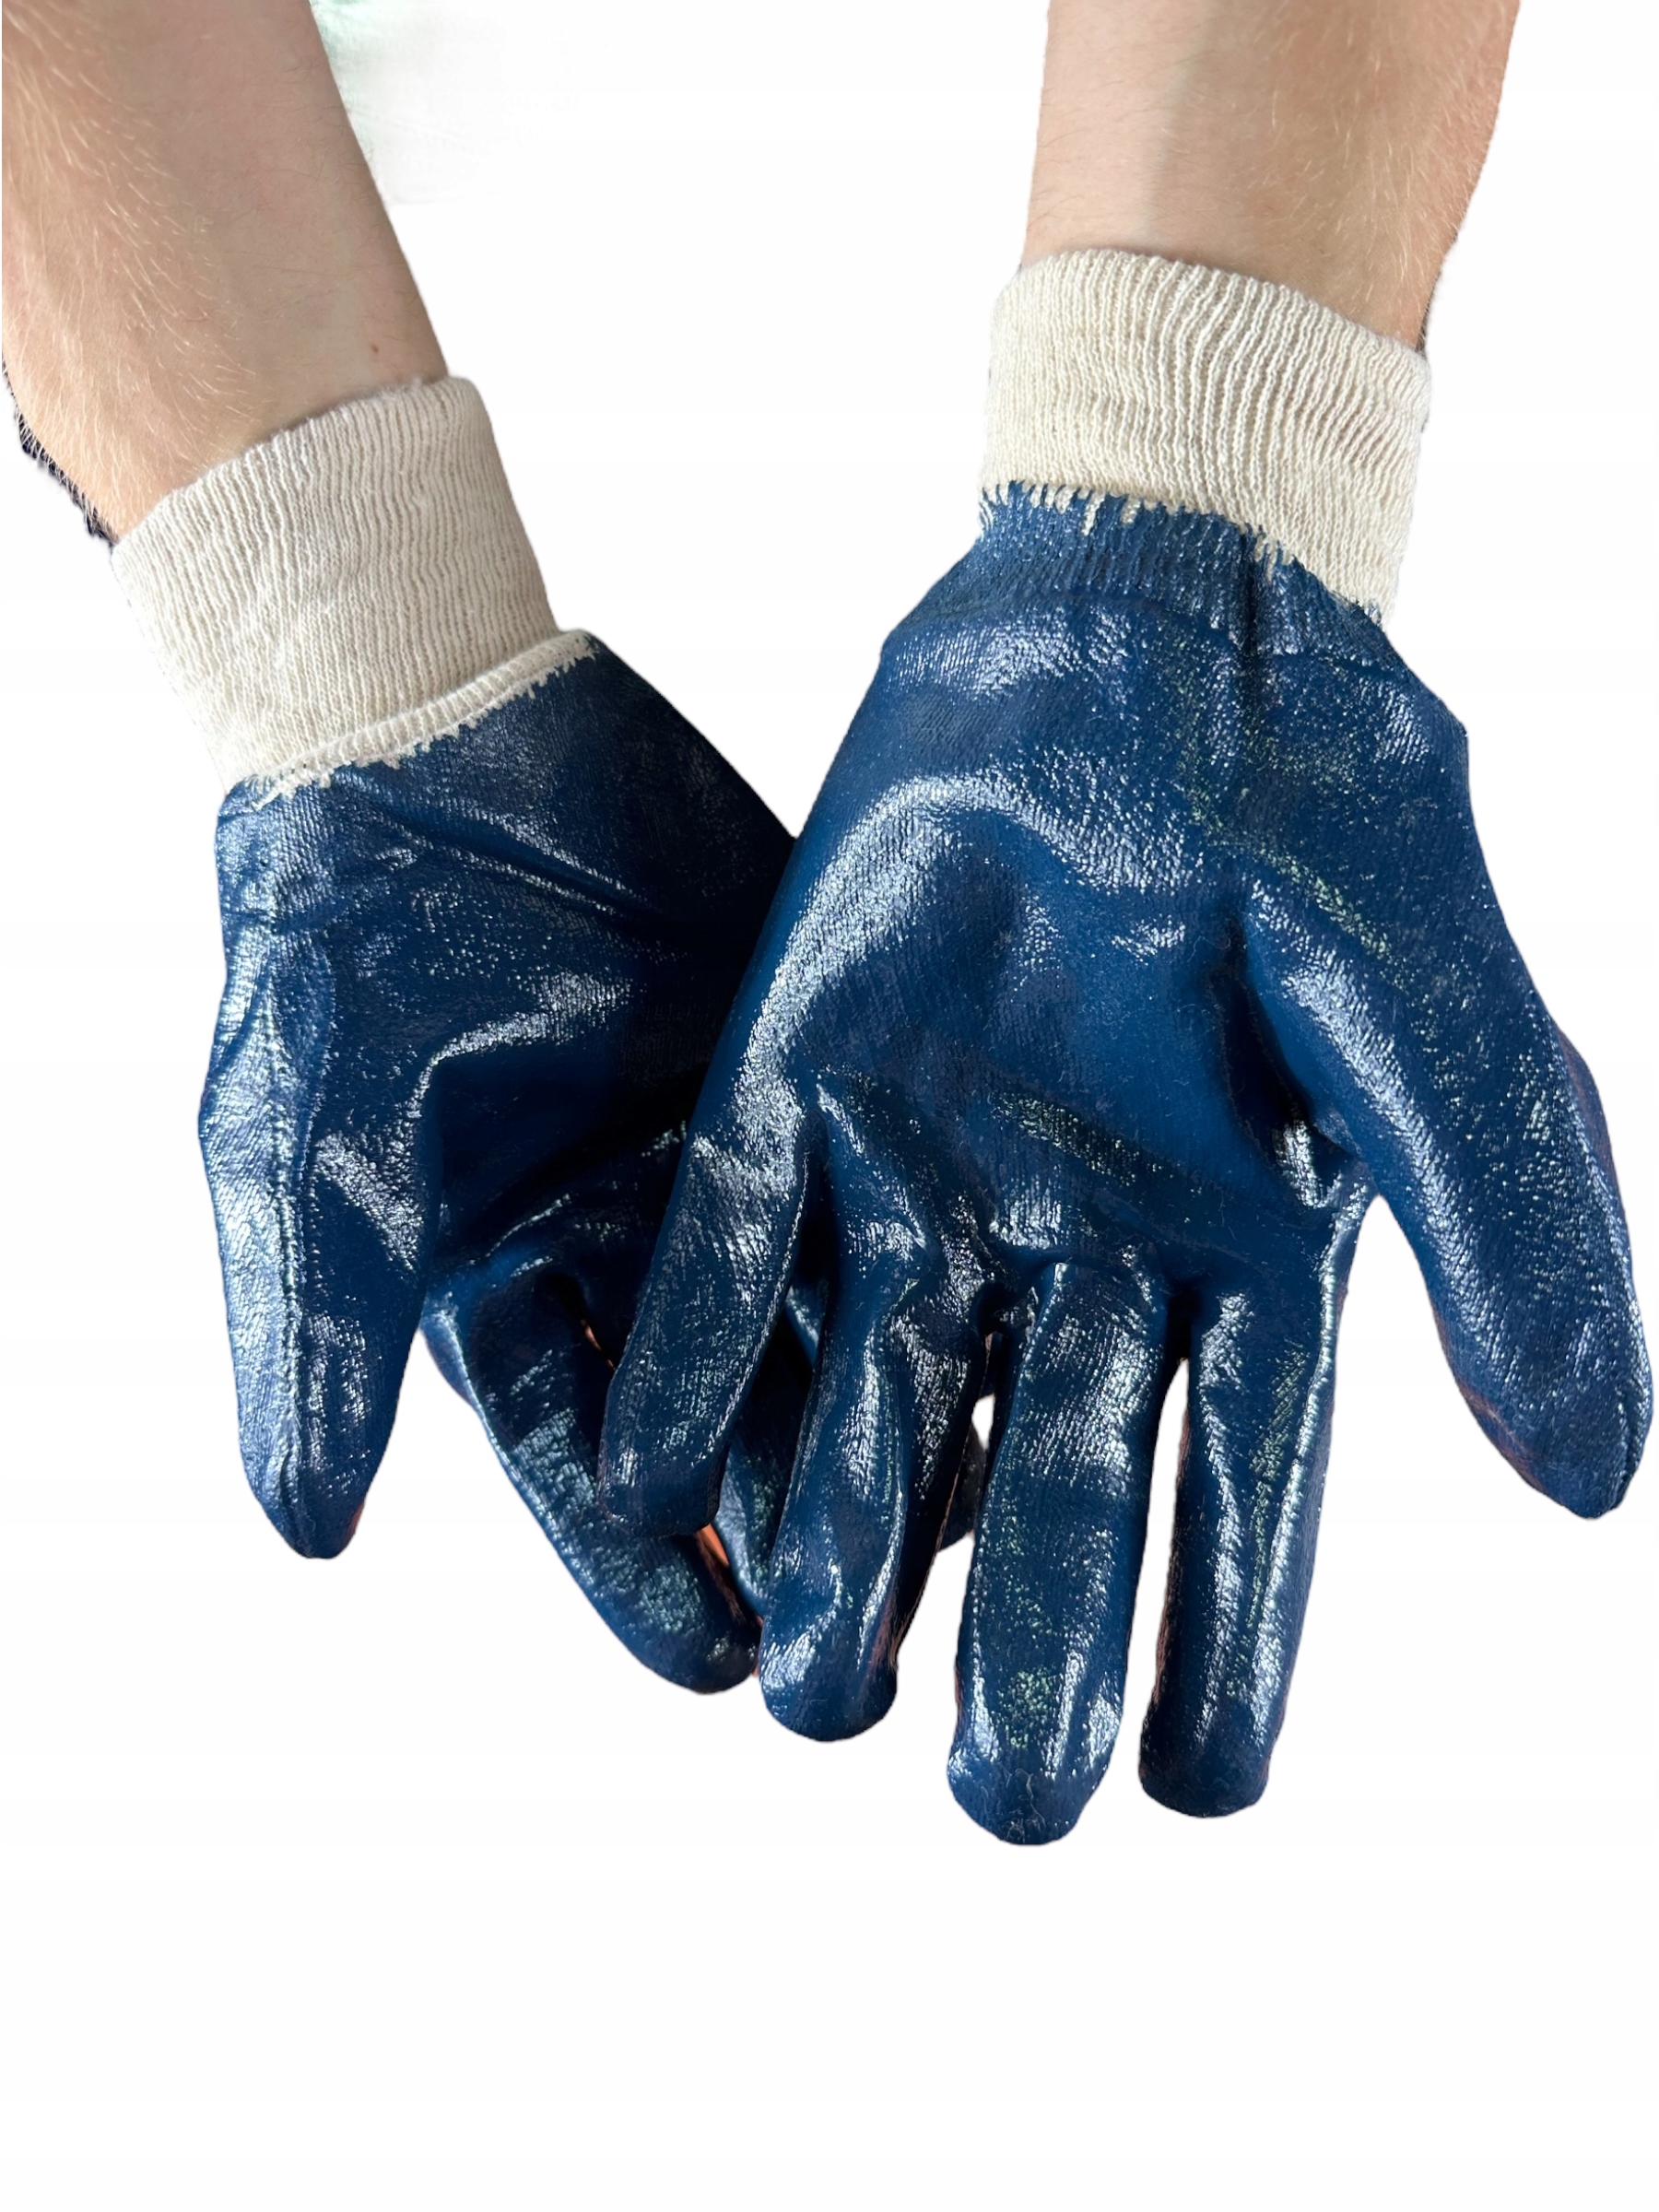 Rękawice robocze PREMIUM niebieskie rozmiar 10/XL Rozmiar 10 - XL